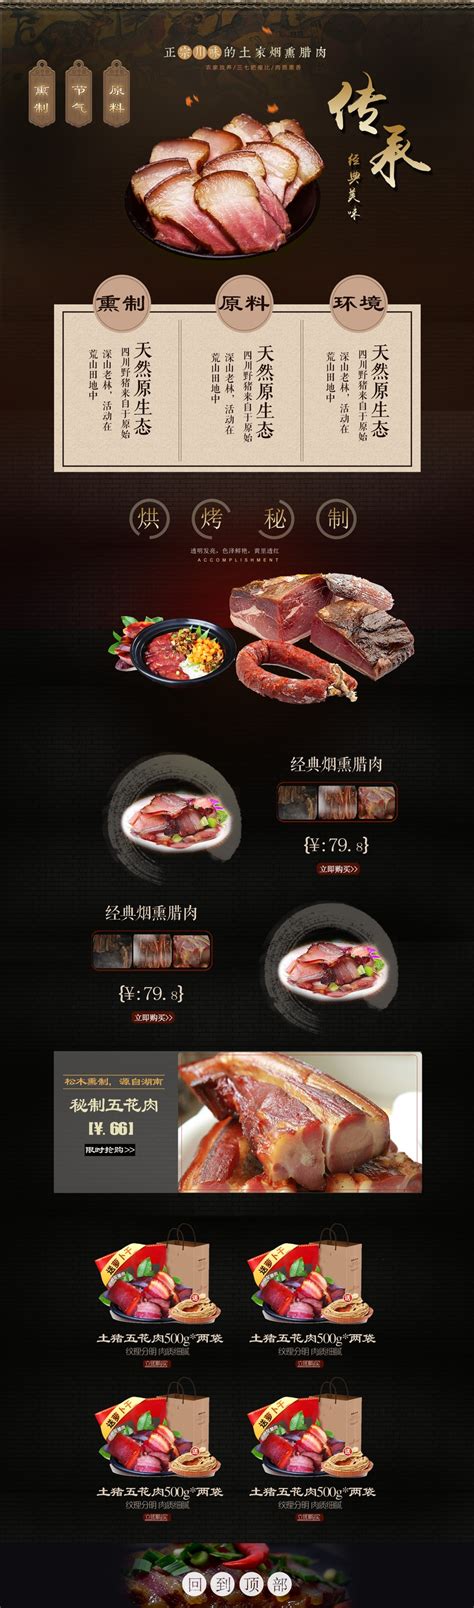 清新简约风肉类制品店铺首页PSD模版设计模板素材